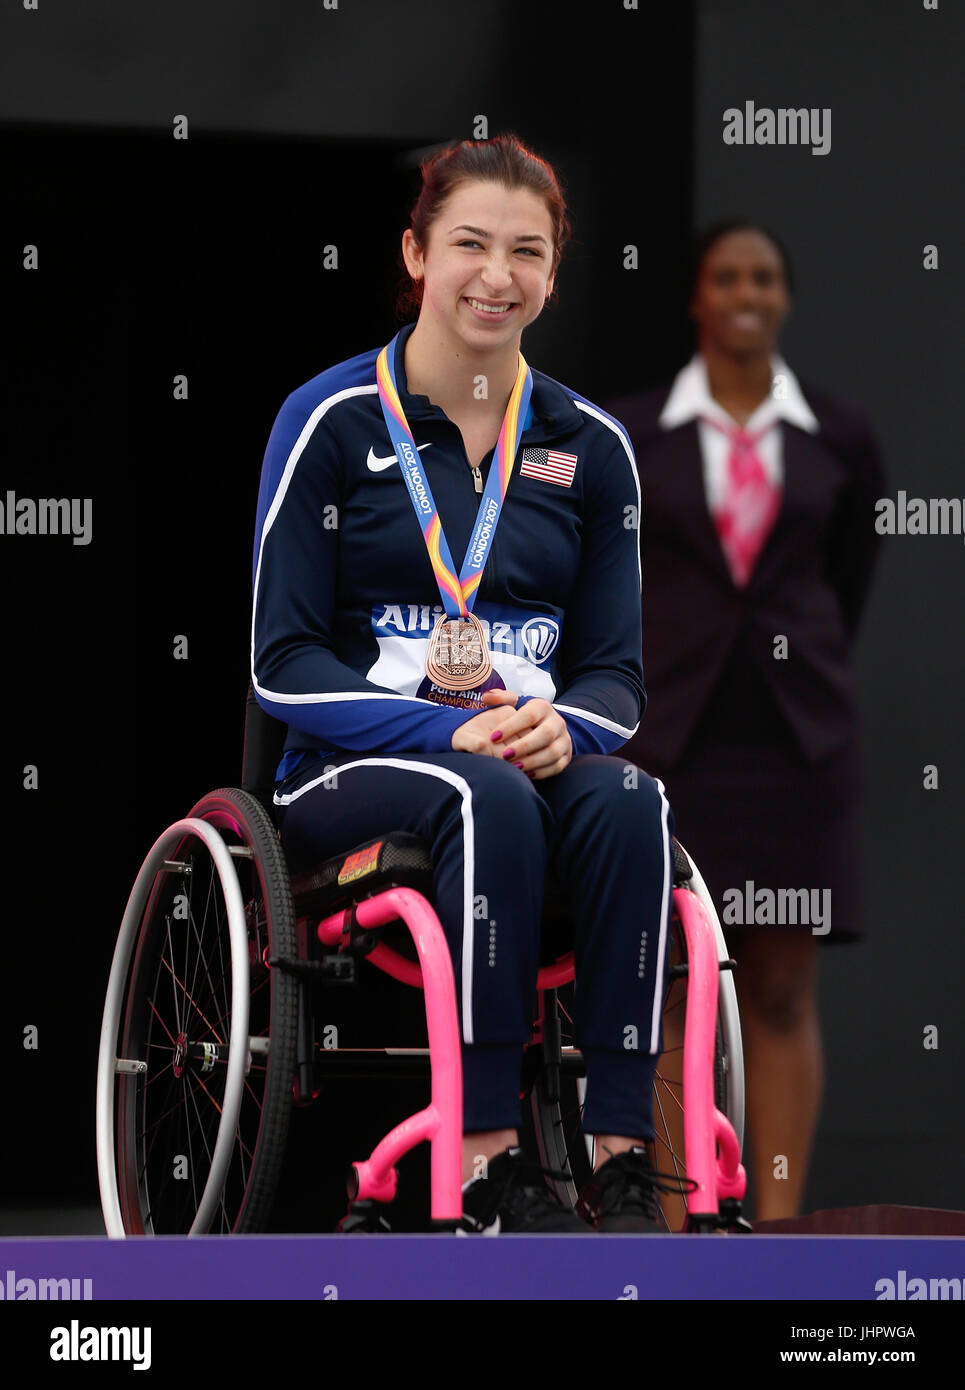 USAS Alexa Halko mit ihrer Bronzemedaille auf dem Podium nach der Frauen 100m T34 tagsüber zwei der 2017 Para Leichtathletik-Weltmeisterschaften in London Stadion. Stockfoto